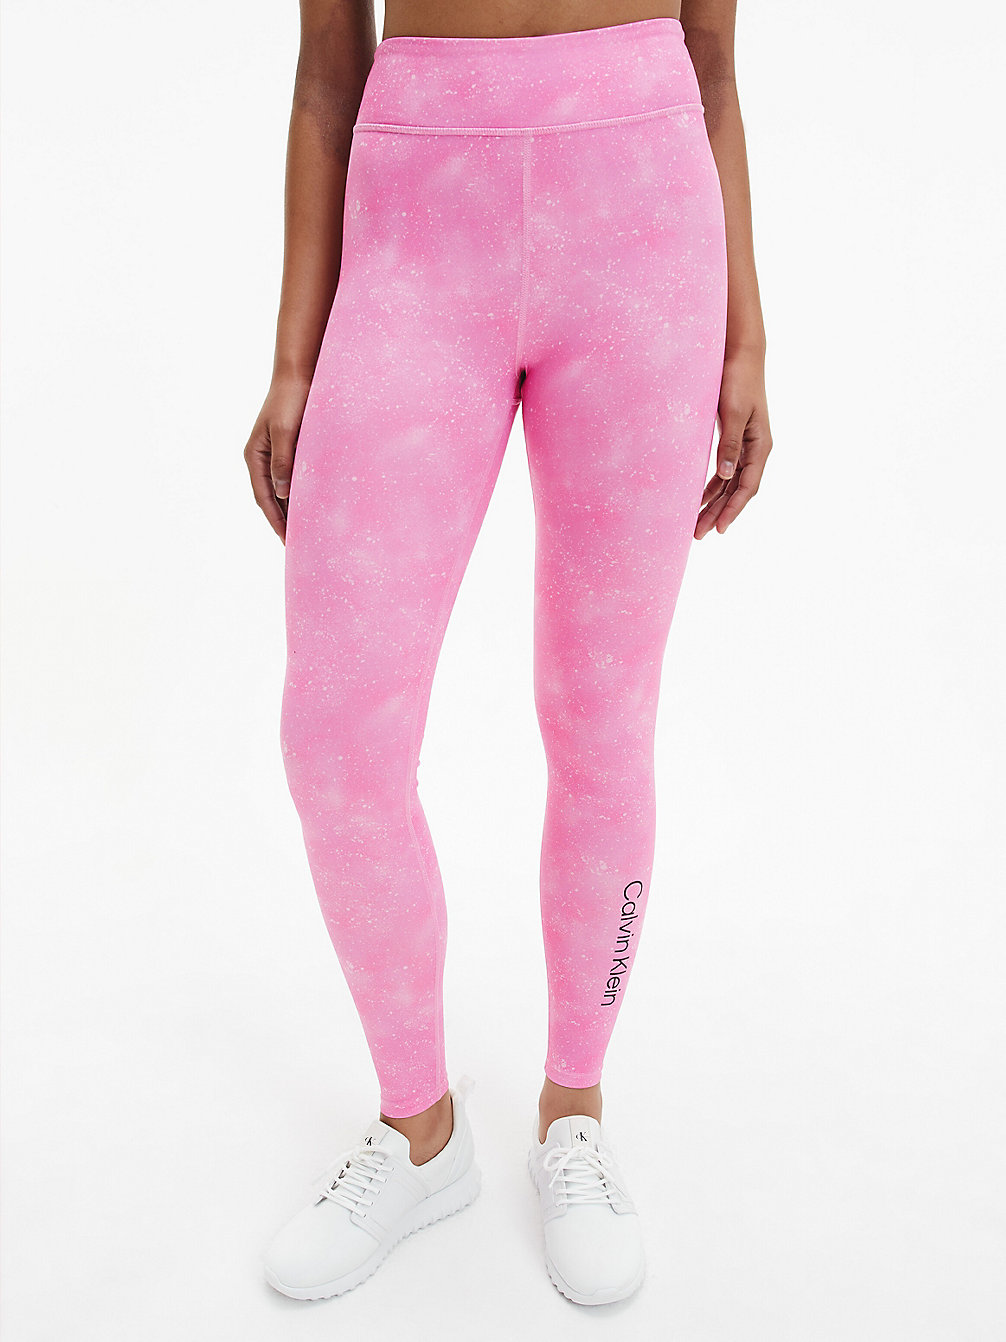 ROSEBLOOM SPLATTER PRINT Splatter Print Gym Leggings undefined women Calvin Klein